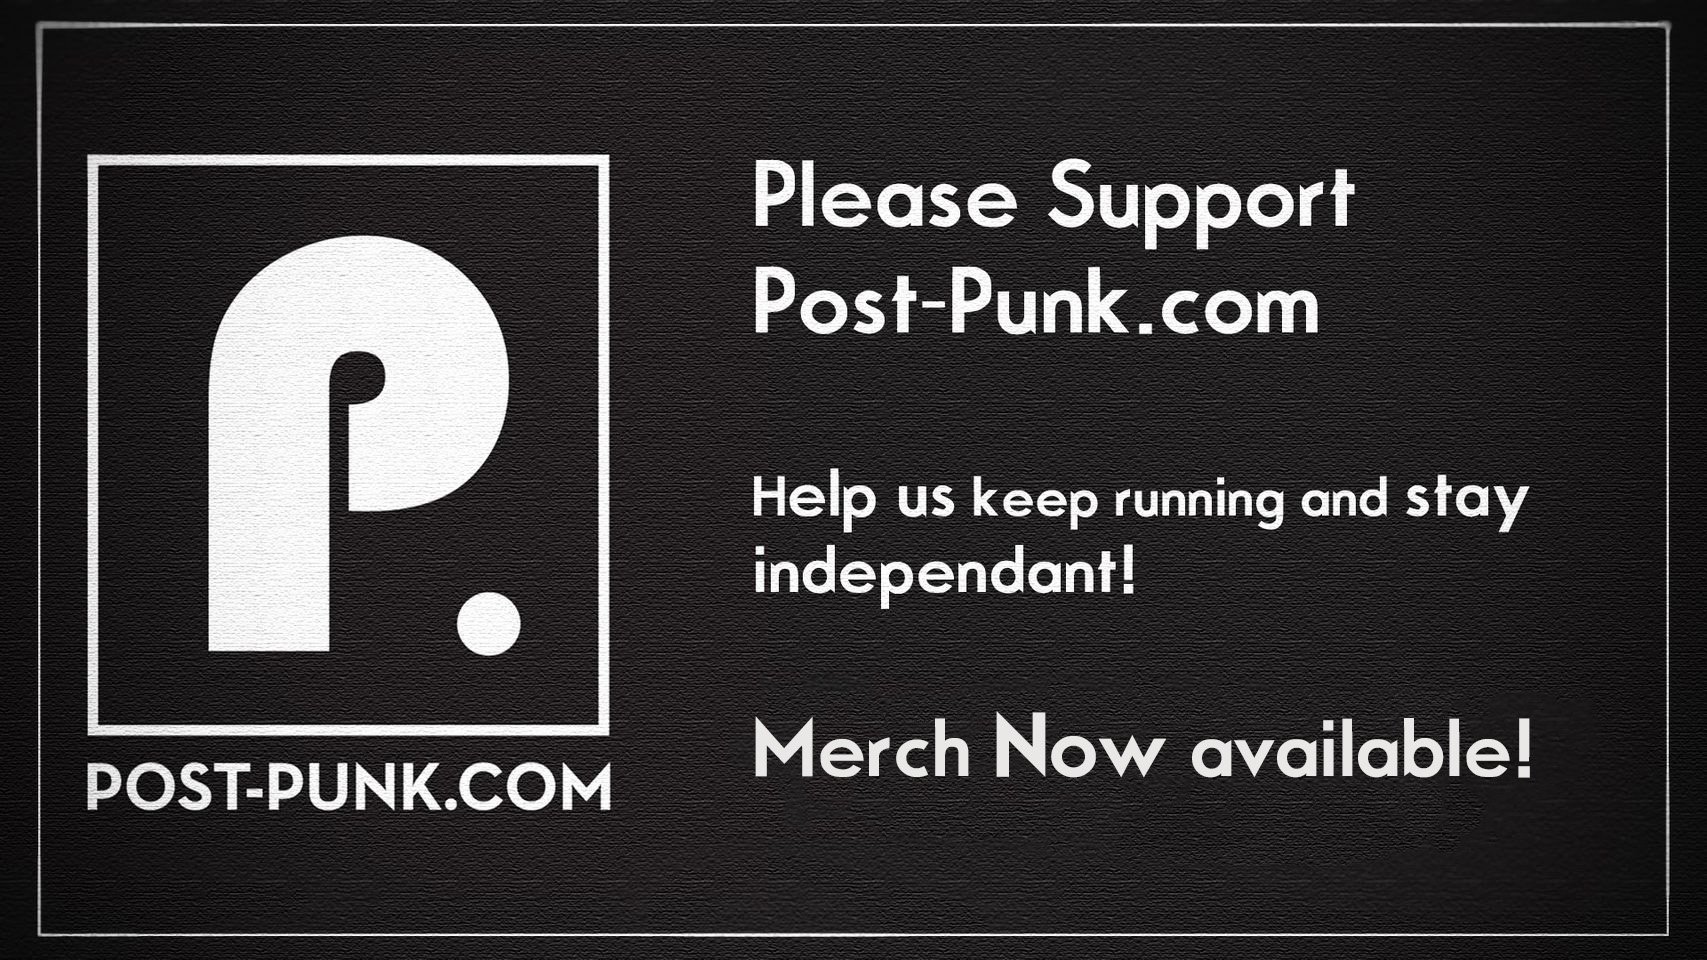 Post-Punk.com Merchandise Available